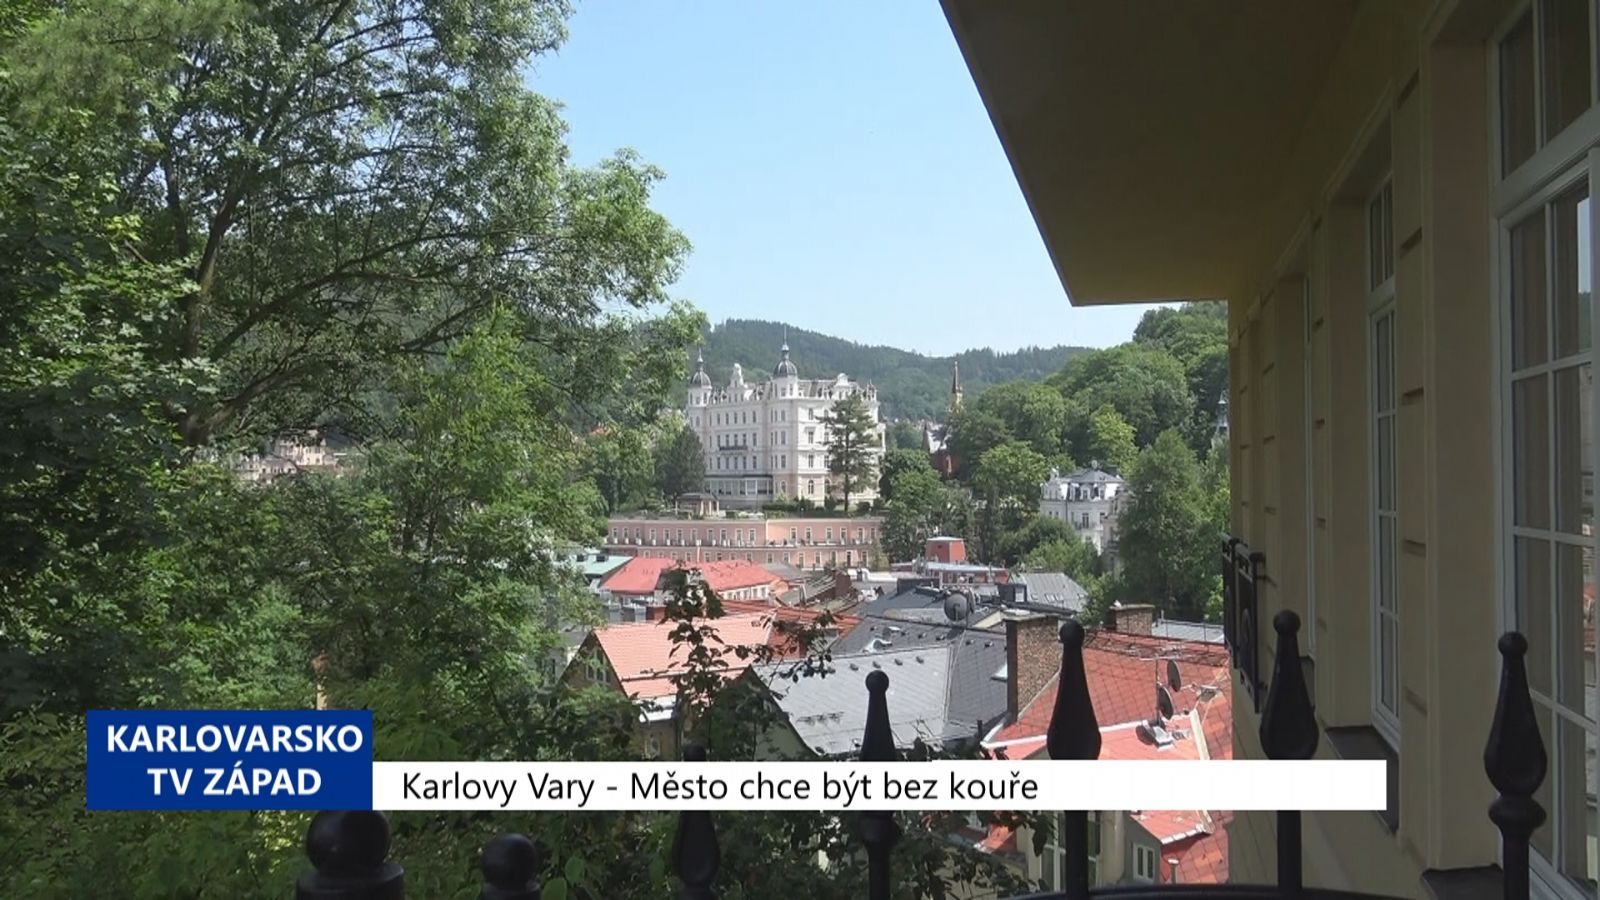 Karlovy Vary: Město chce být bez kouře (TV Západ)